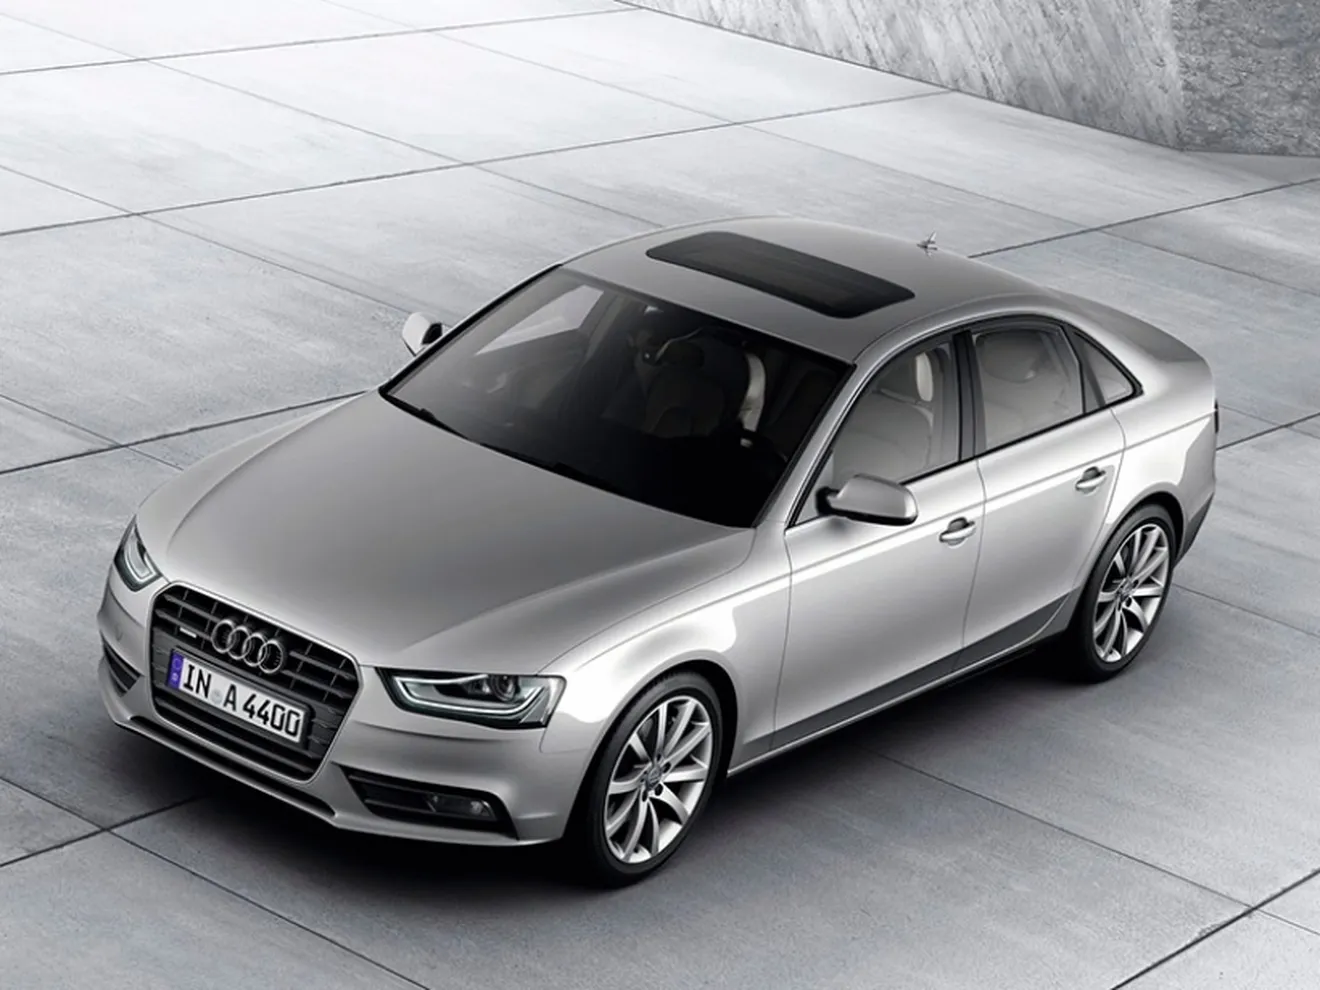 Audi llamará a revisión a 850.000 A4 por problemas con los airbags